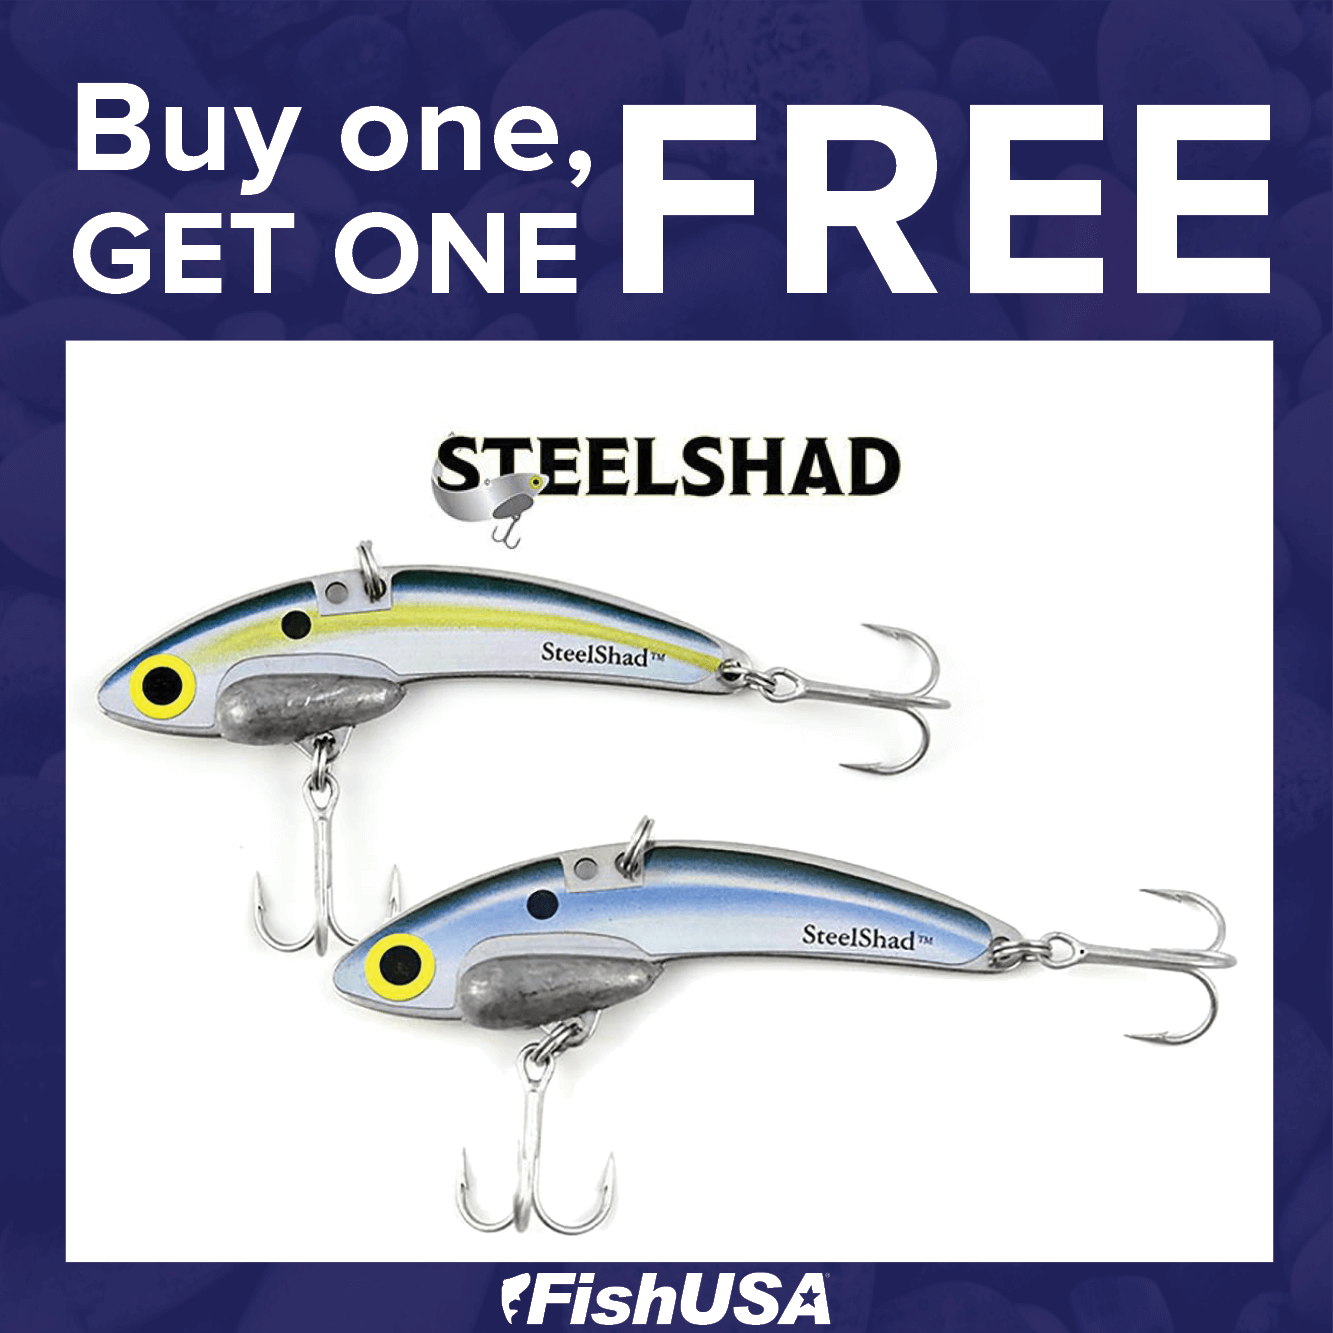 Buy 1, Get 1 FREE on SteelShad Original Blade Baits